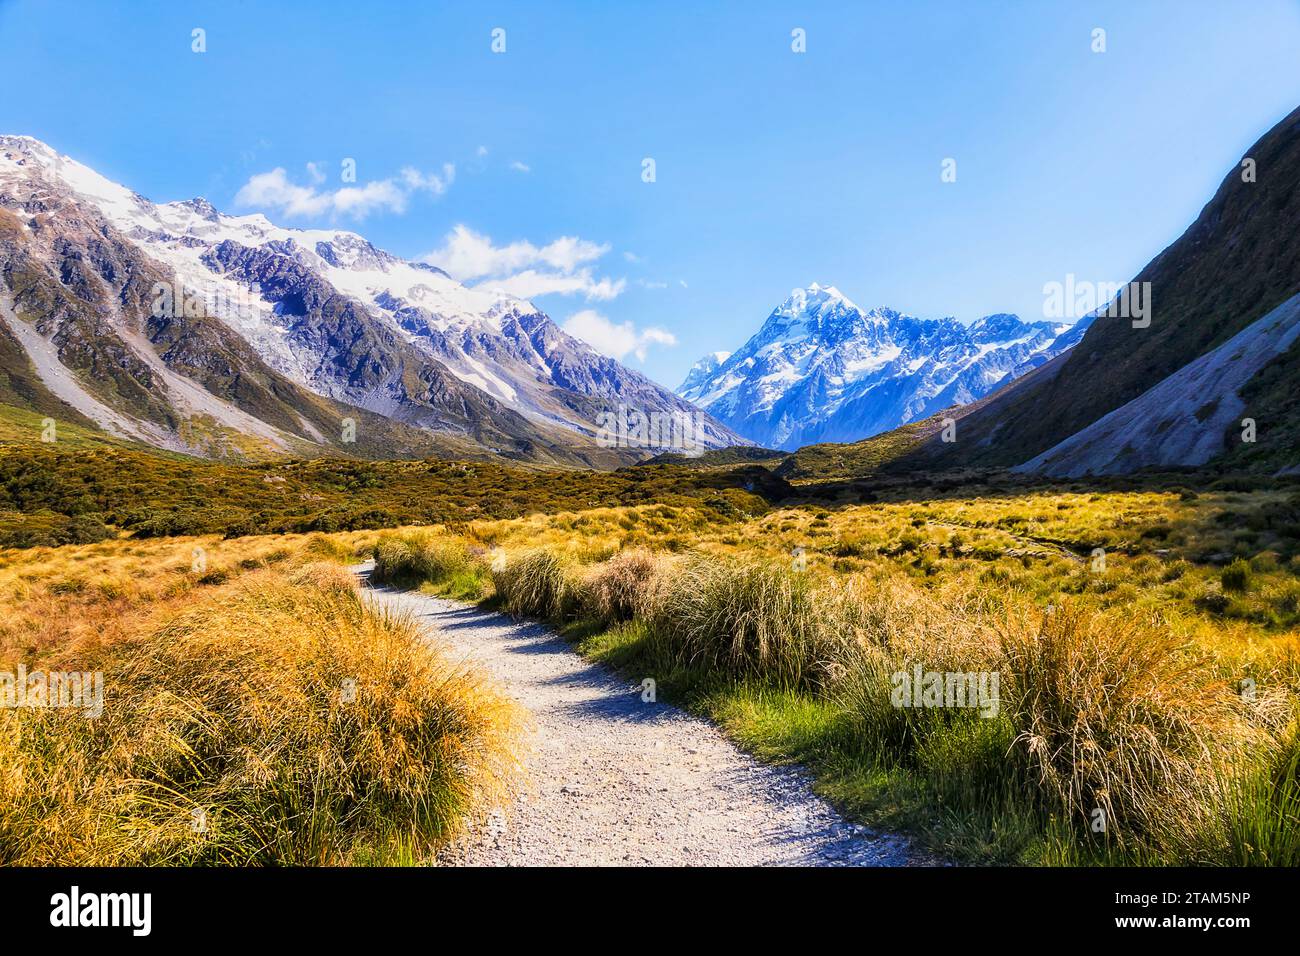 Sentiero panoramico per escursioni nella valle di Hooker in nuova Zelanda che conduce al maestoso Monte Cook, popolare destinazione turistica. Foto Stock